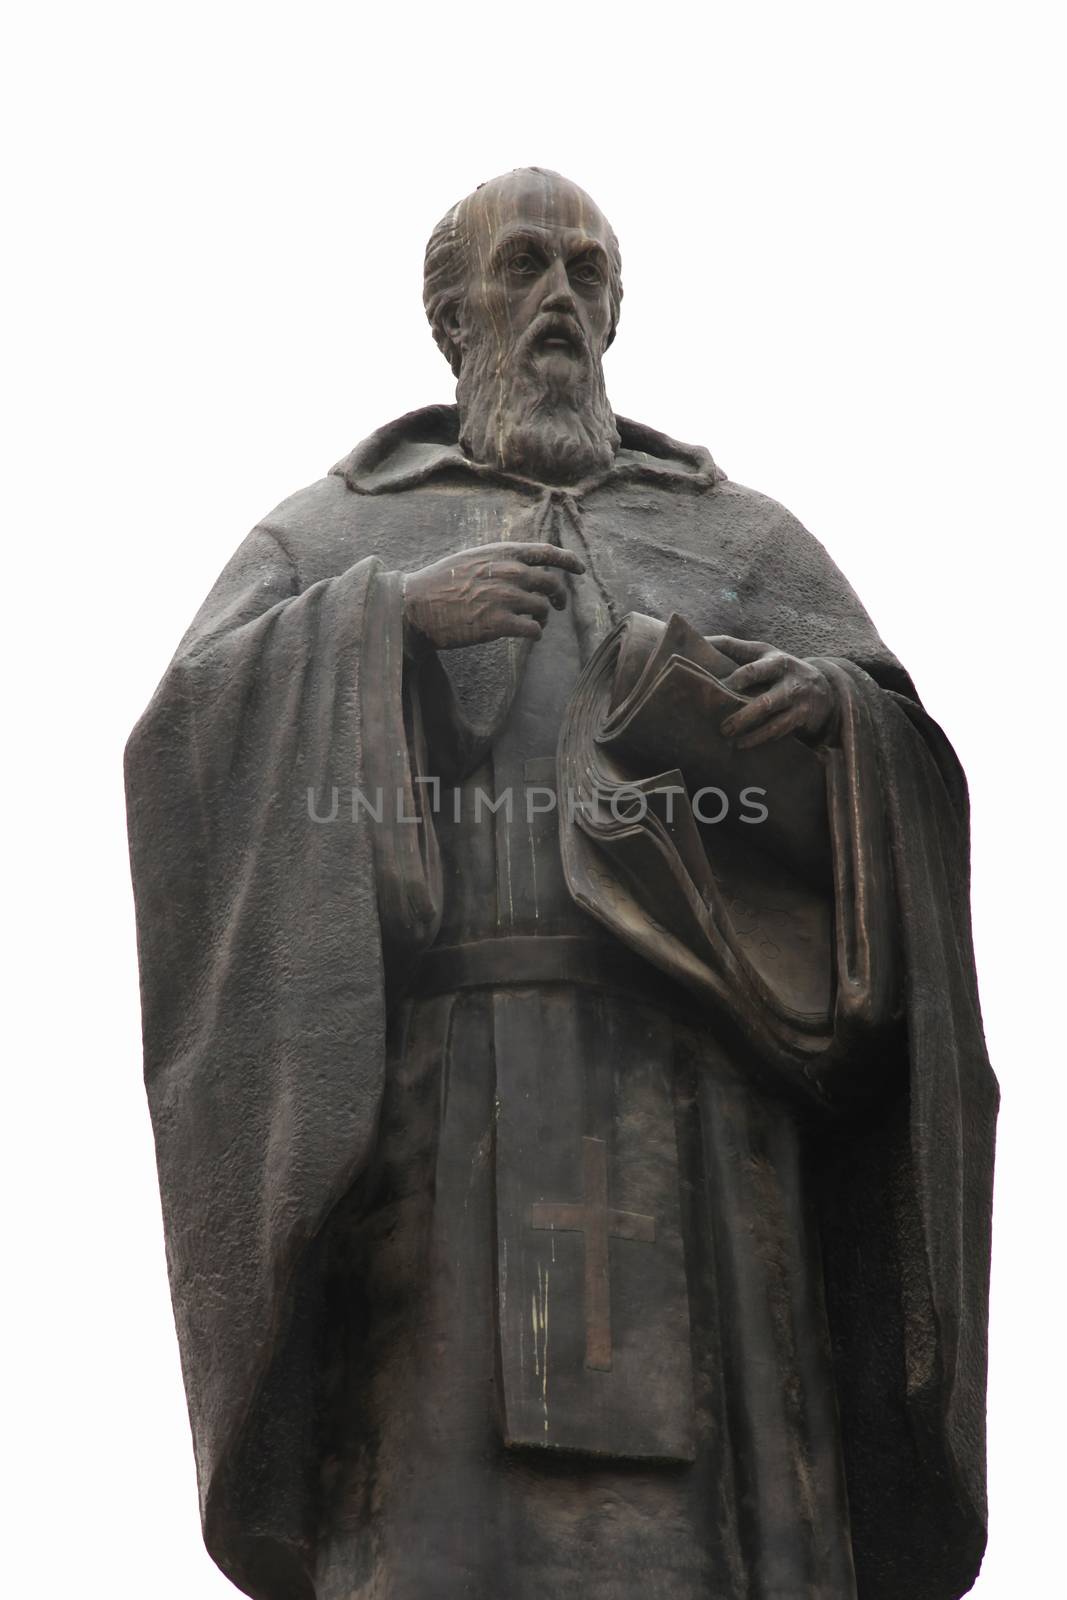 Statue of  Saint Cyril in Skopje  in downtown of Skopje, Macedonia